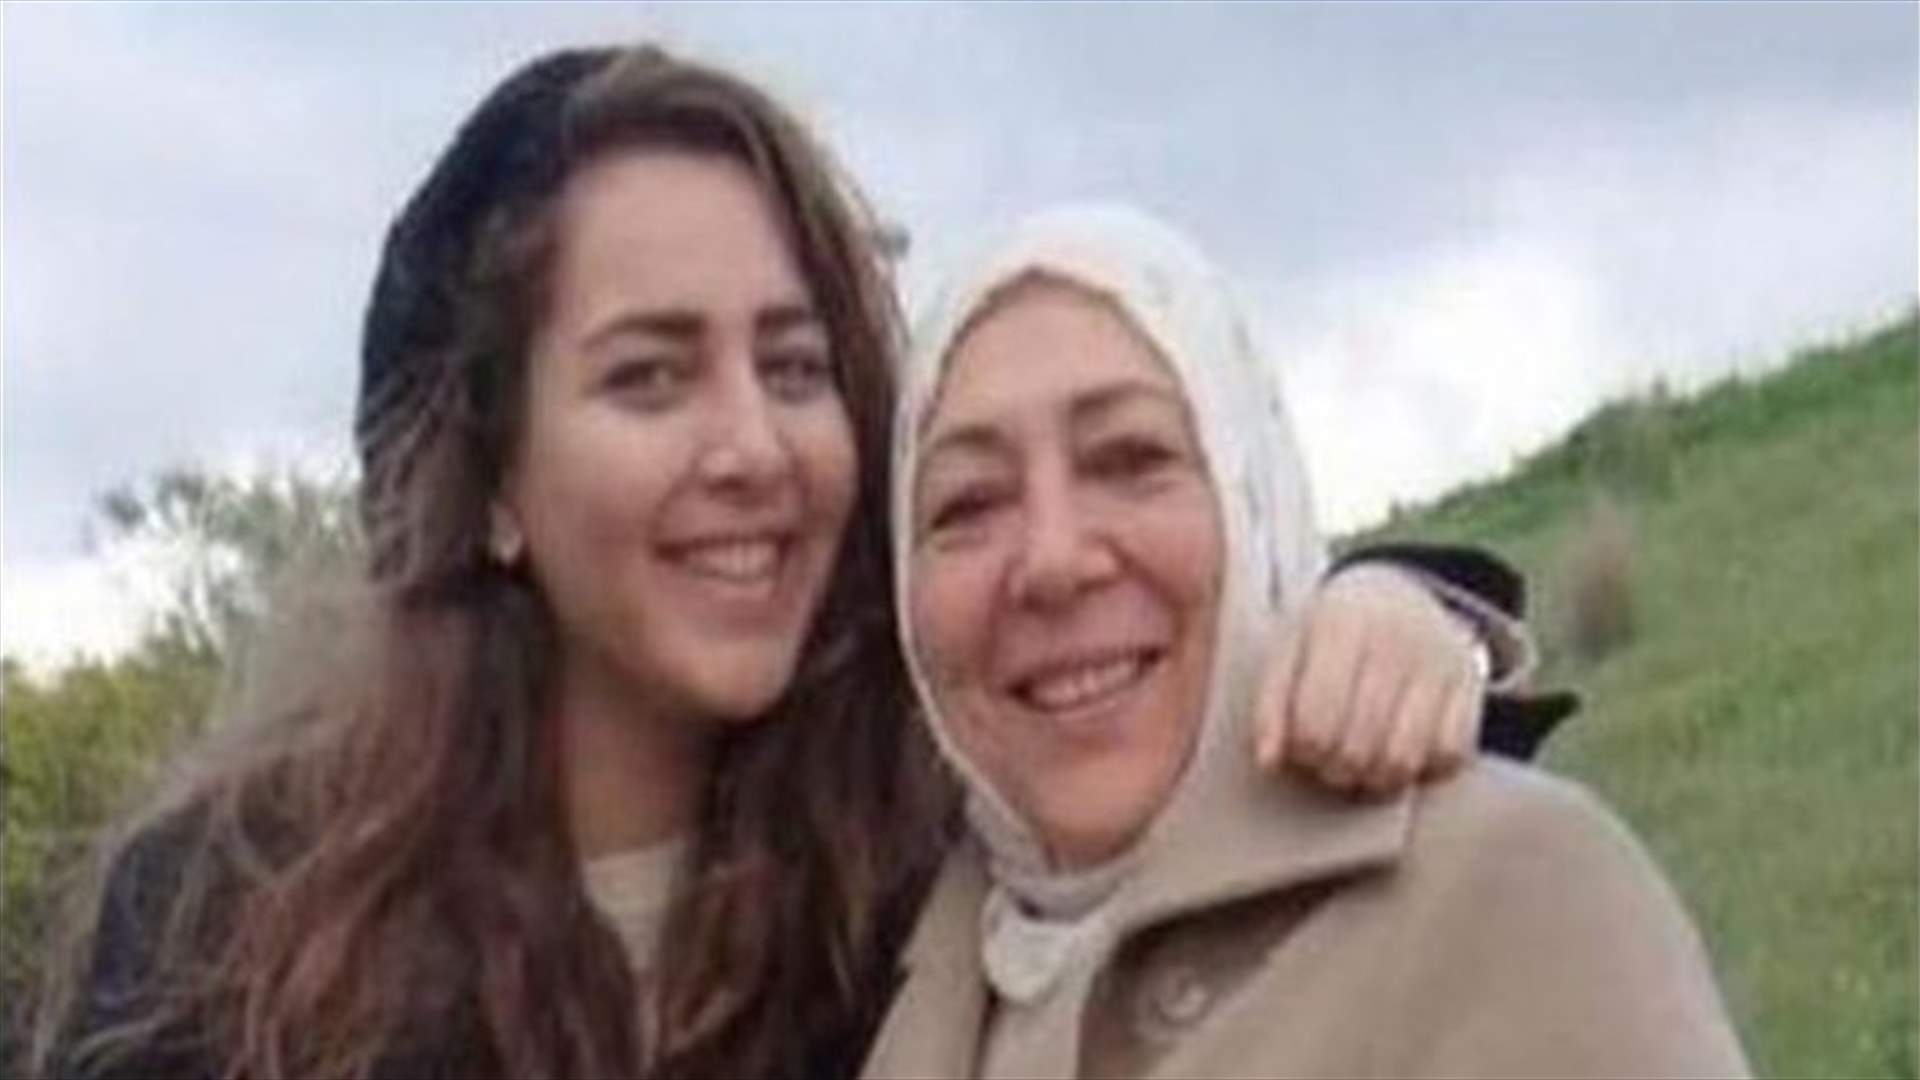 Turkey jails man for murder of Syria activist and journalist daughter